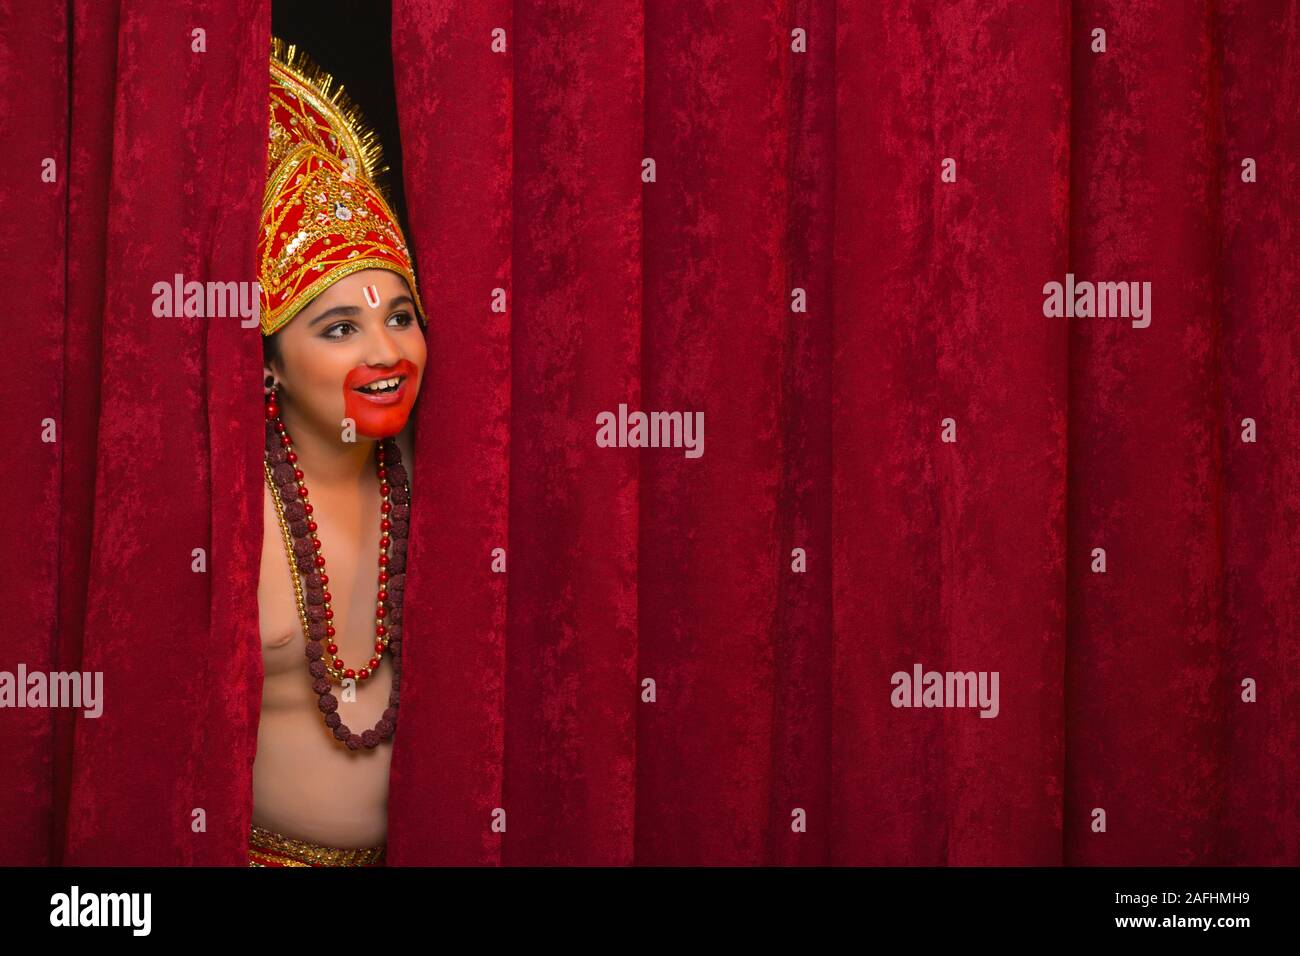 Kind verkleidet als hanuman peeking out von Gardinen Stockfoto